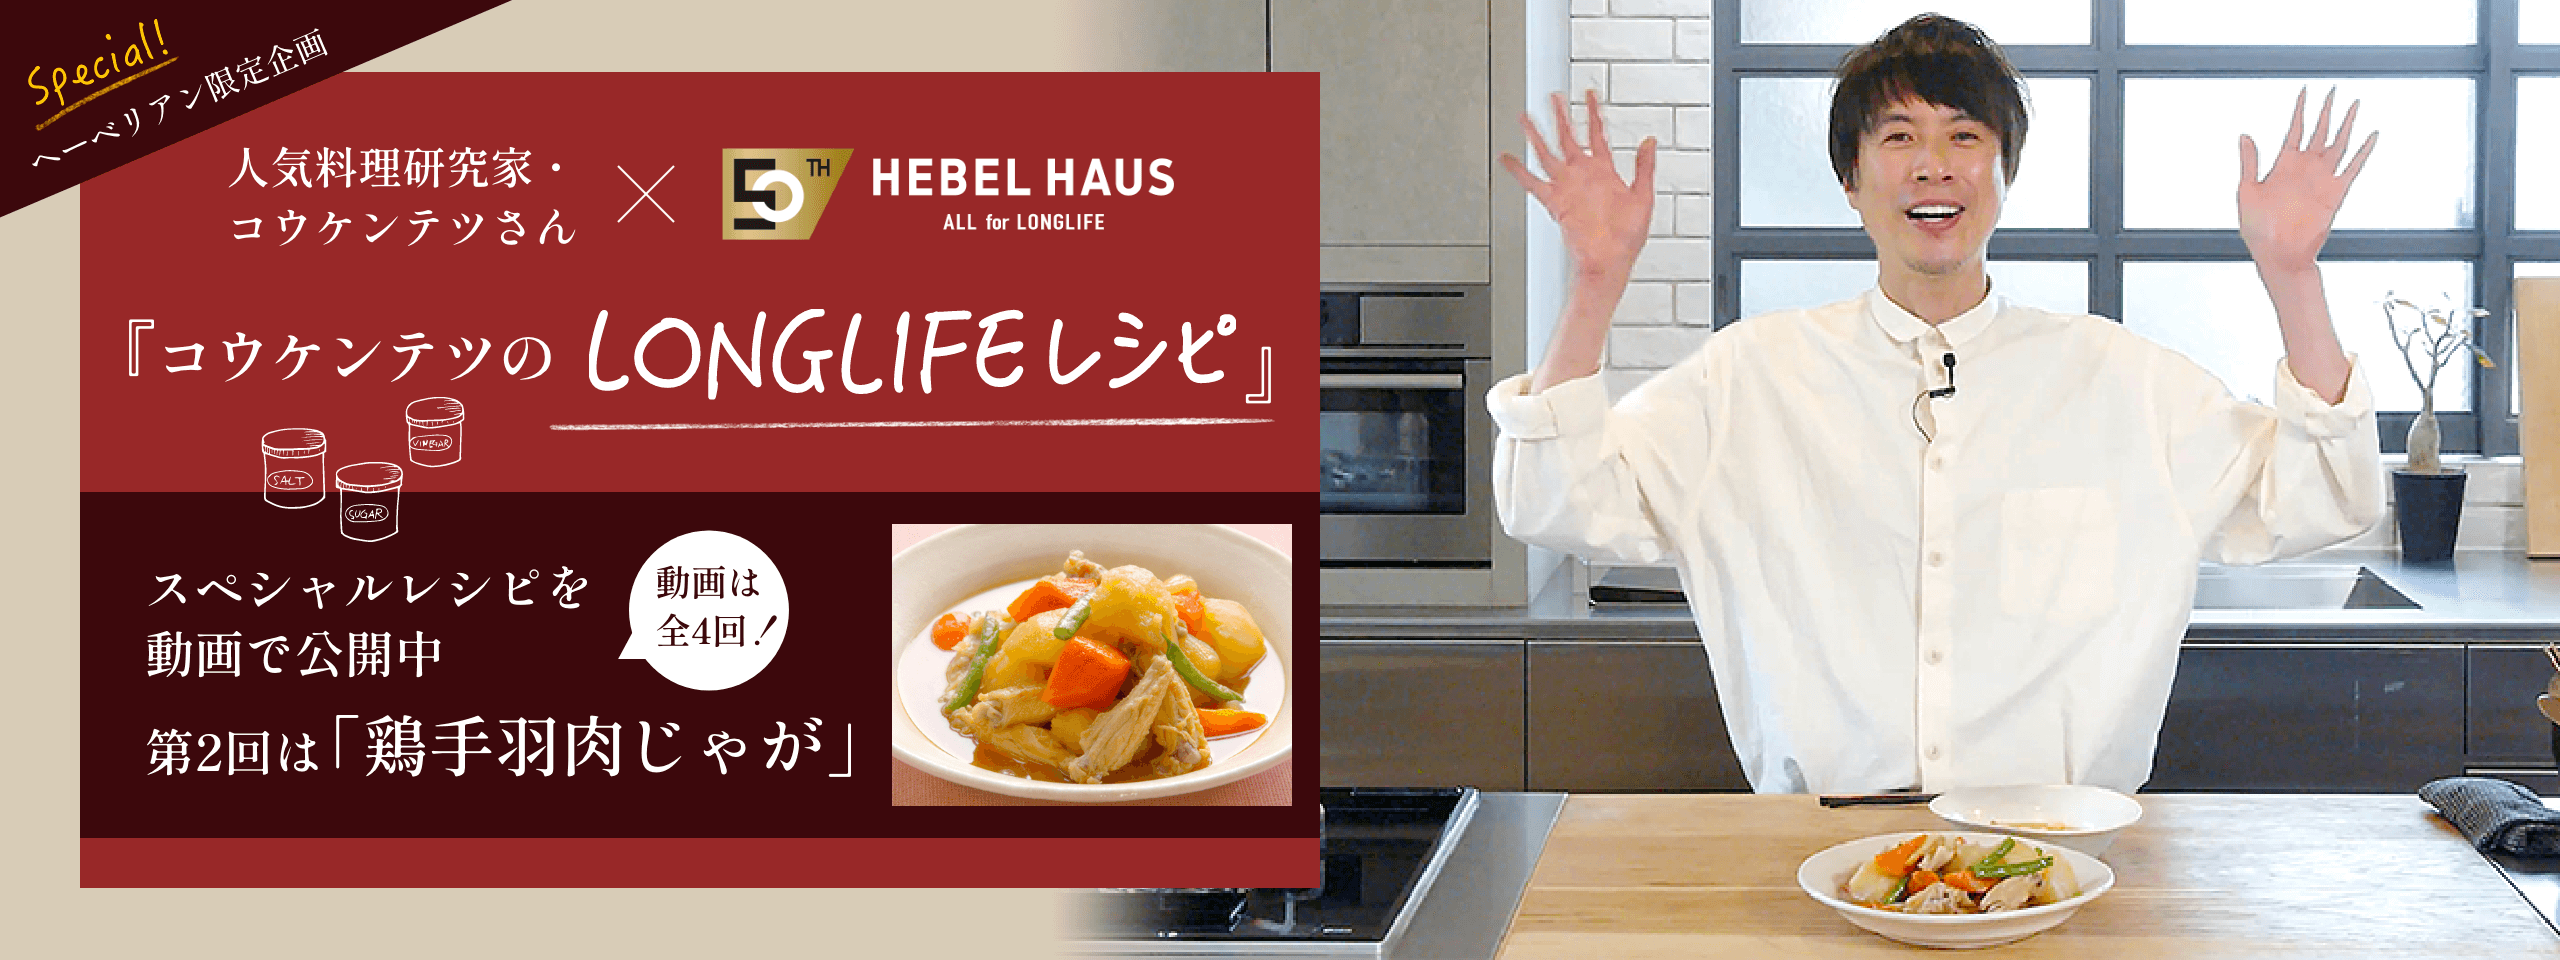 人気料理研究家・コウケンテツさん×HEBEL HAUS 『コウケンテツのLONGLIFE』レシピ スペシャルレシピを動画で公開中